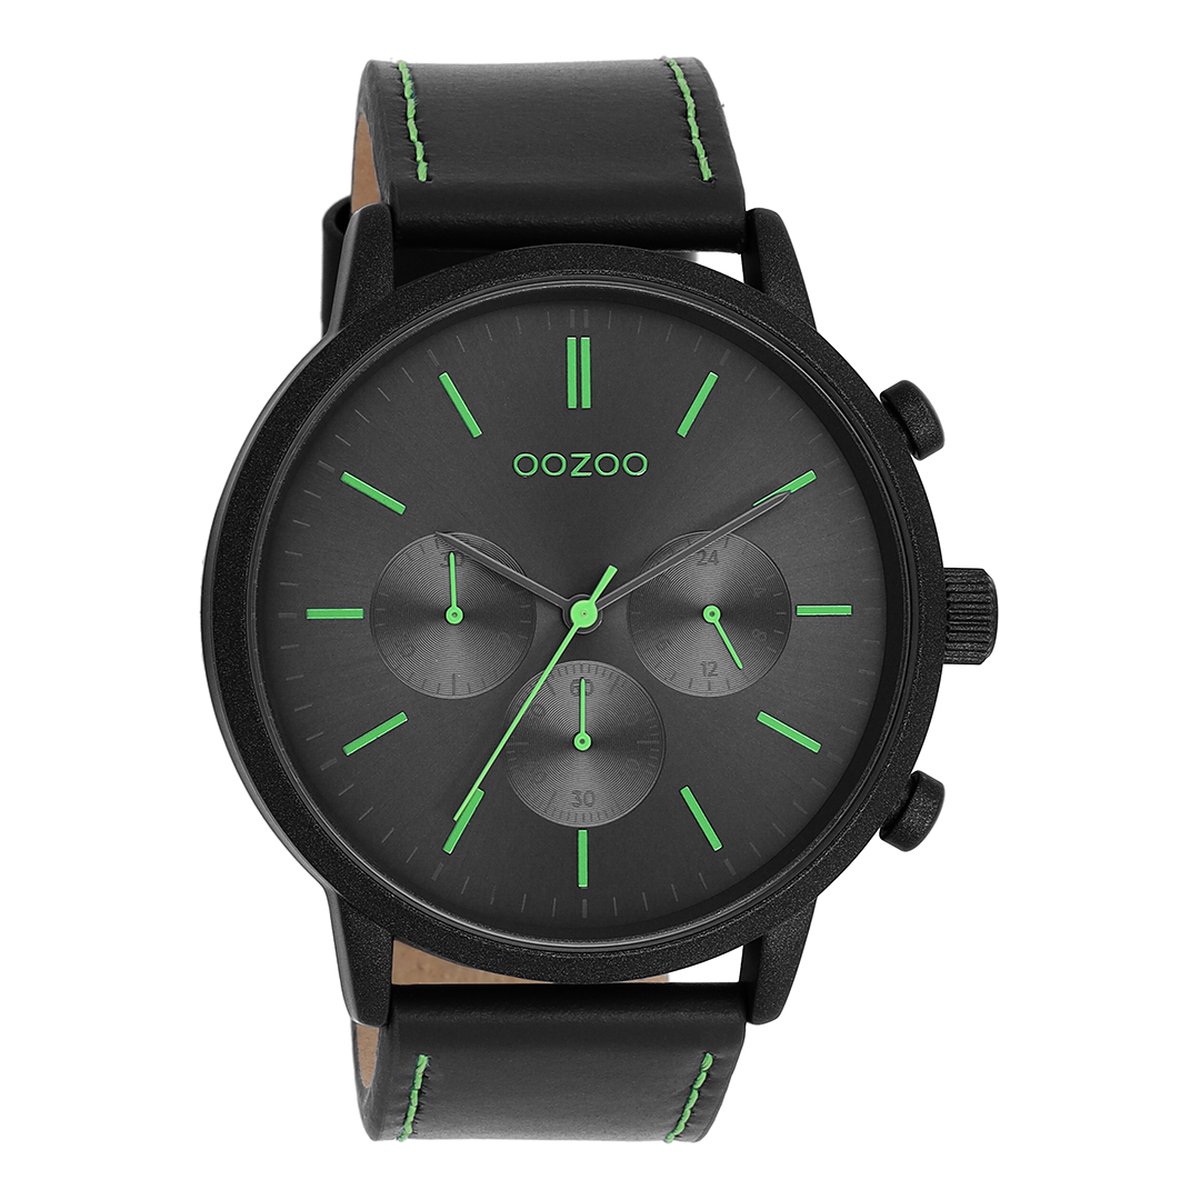 OOZOO Timepieces - Zwarte OOZOO horloge met zwarte leren band - C11208